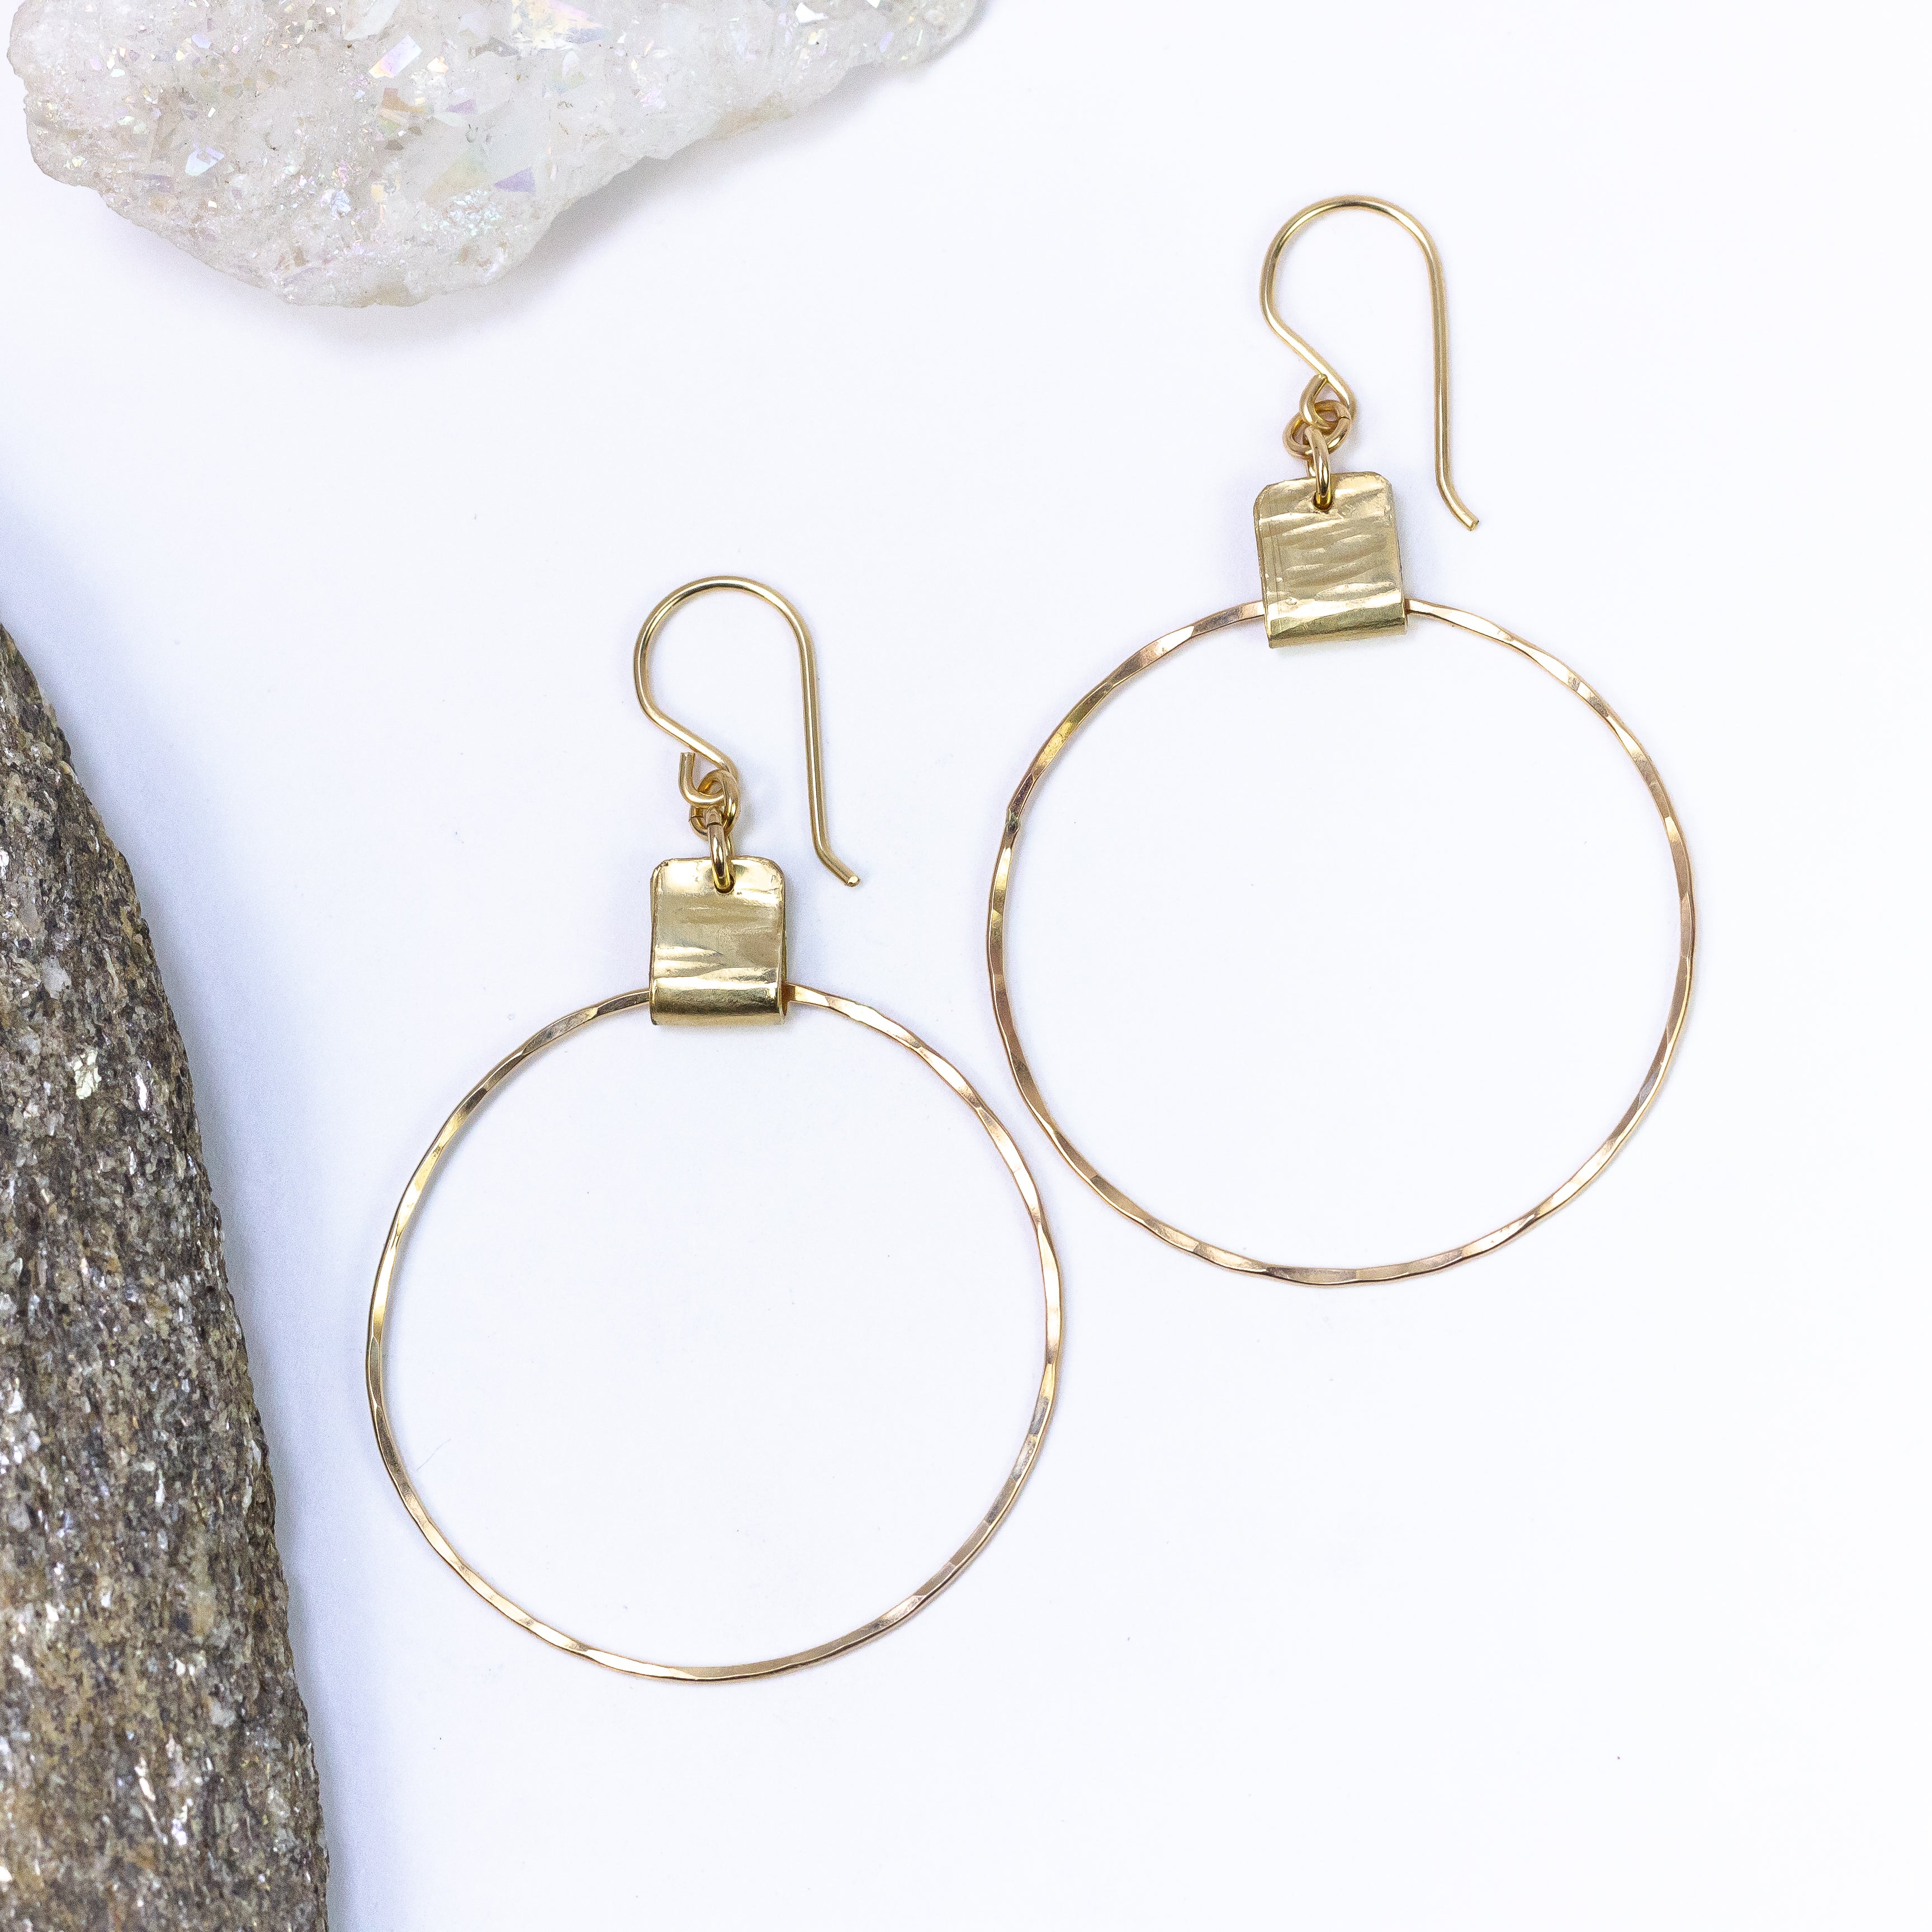 handmade gold filled hoop earrings laura j designs